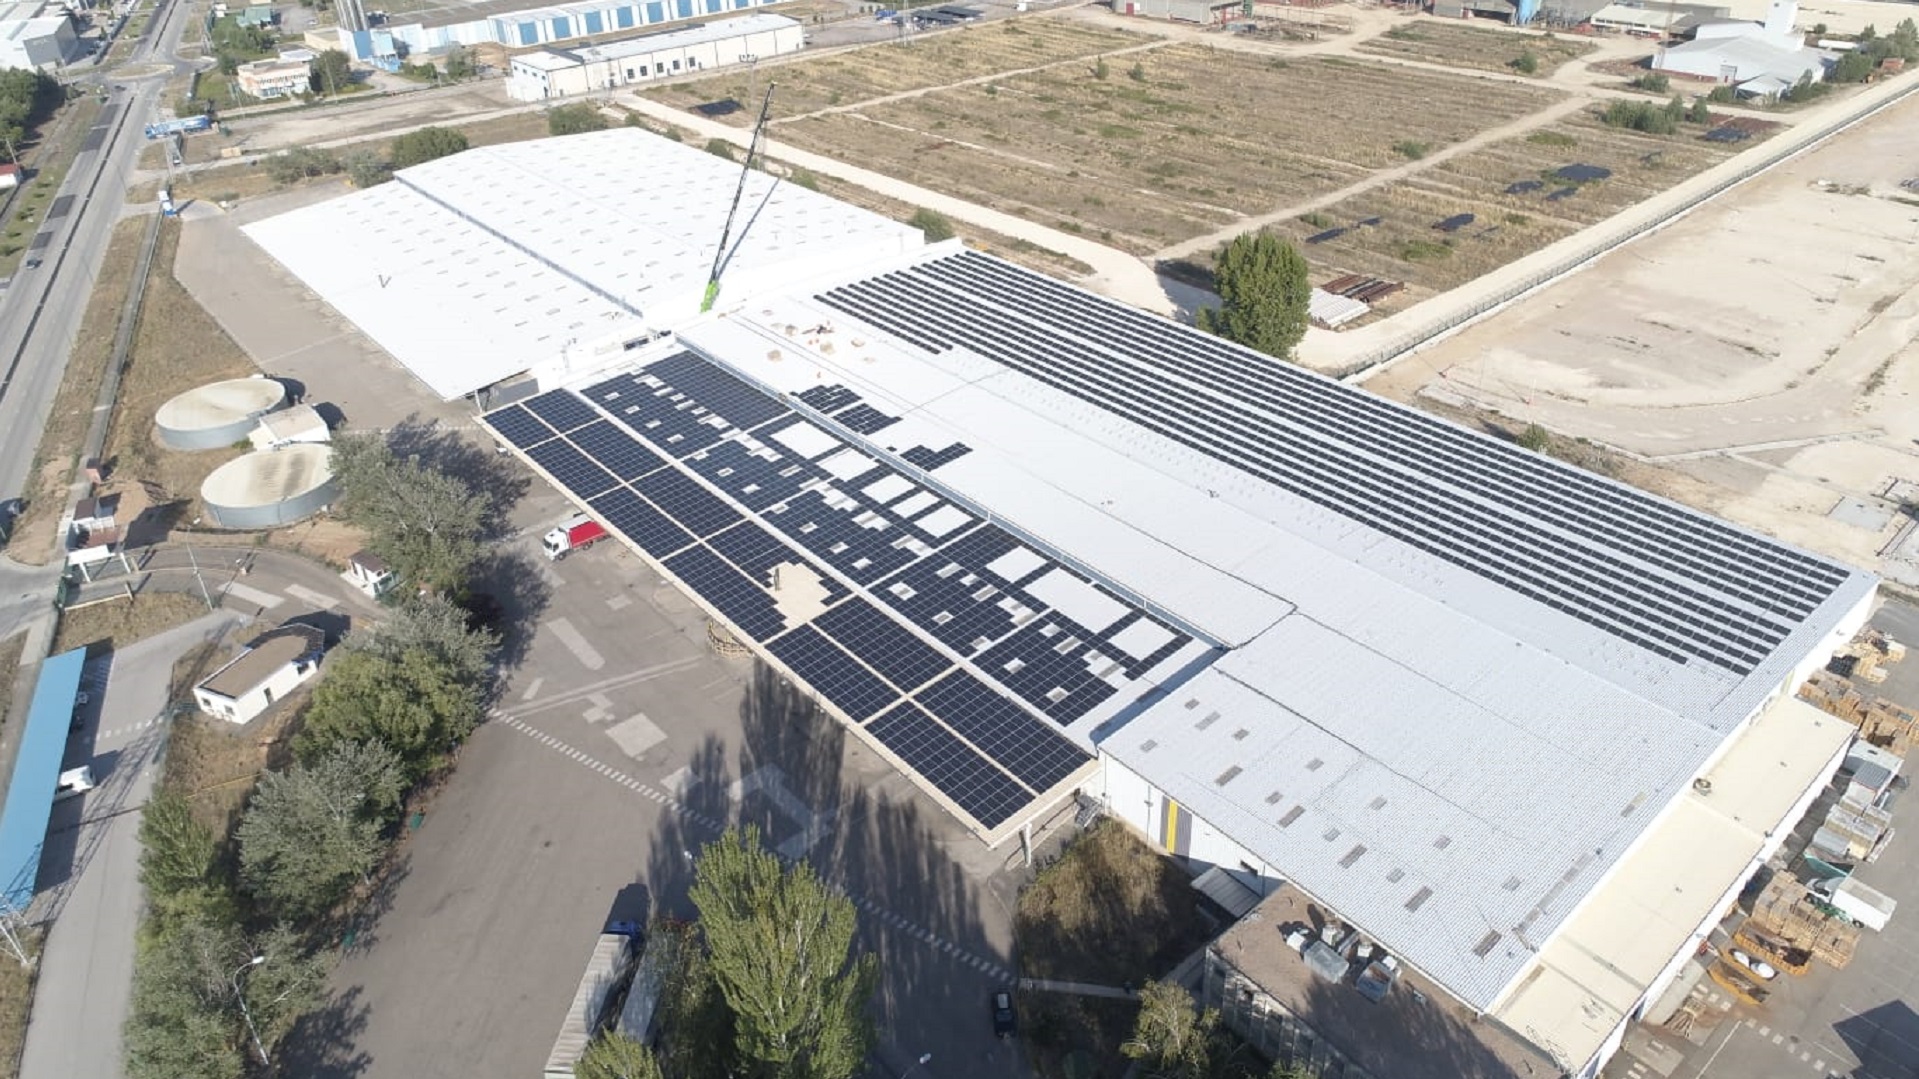 Instalación solar fotovoltaica de venta a red de 1,5MWp en Burgos